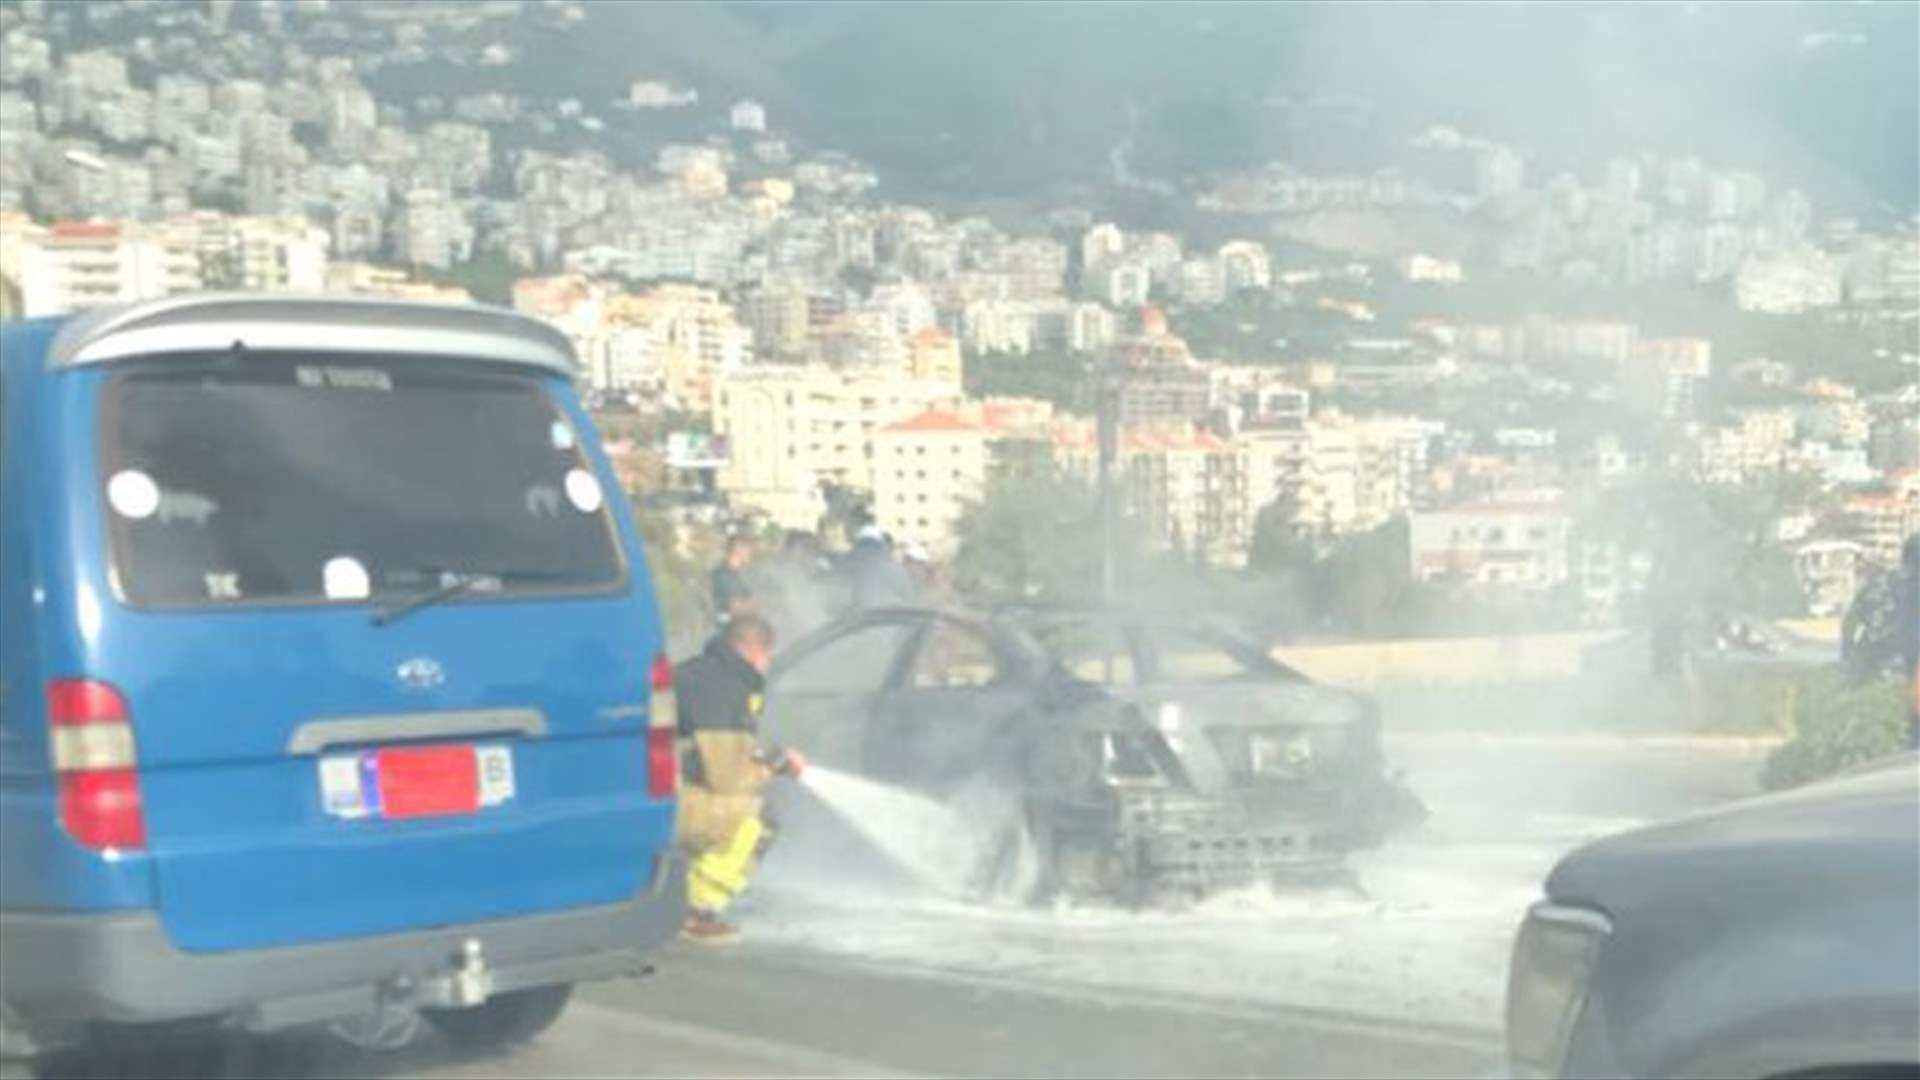 بالصورة- احتراق سيارة على المسلك الغربي من اوتوستراد كازينو لبنان يتسبب بزحمة سير